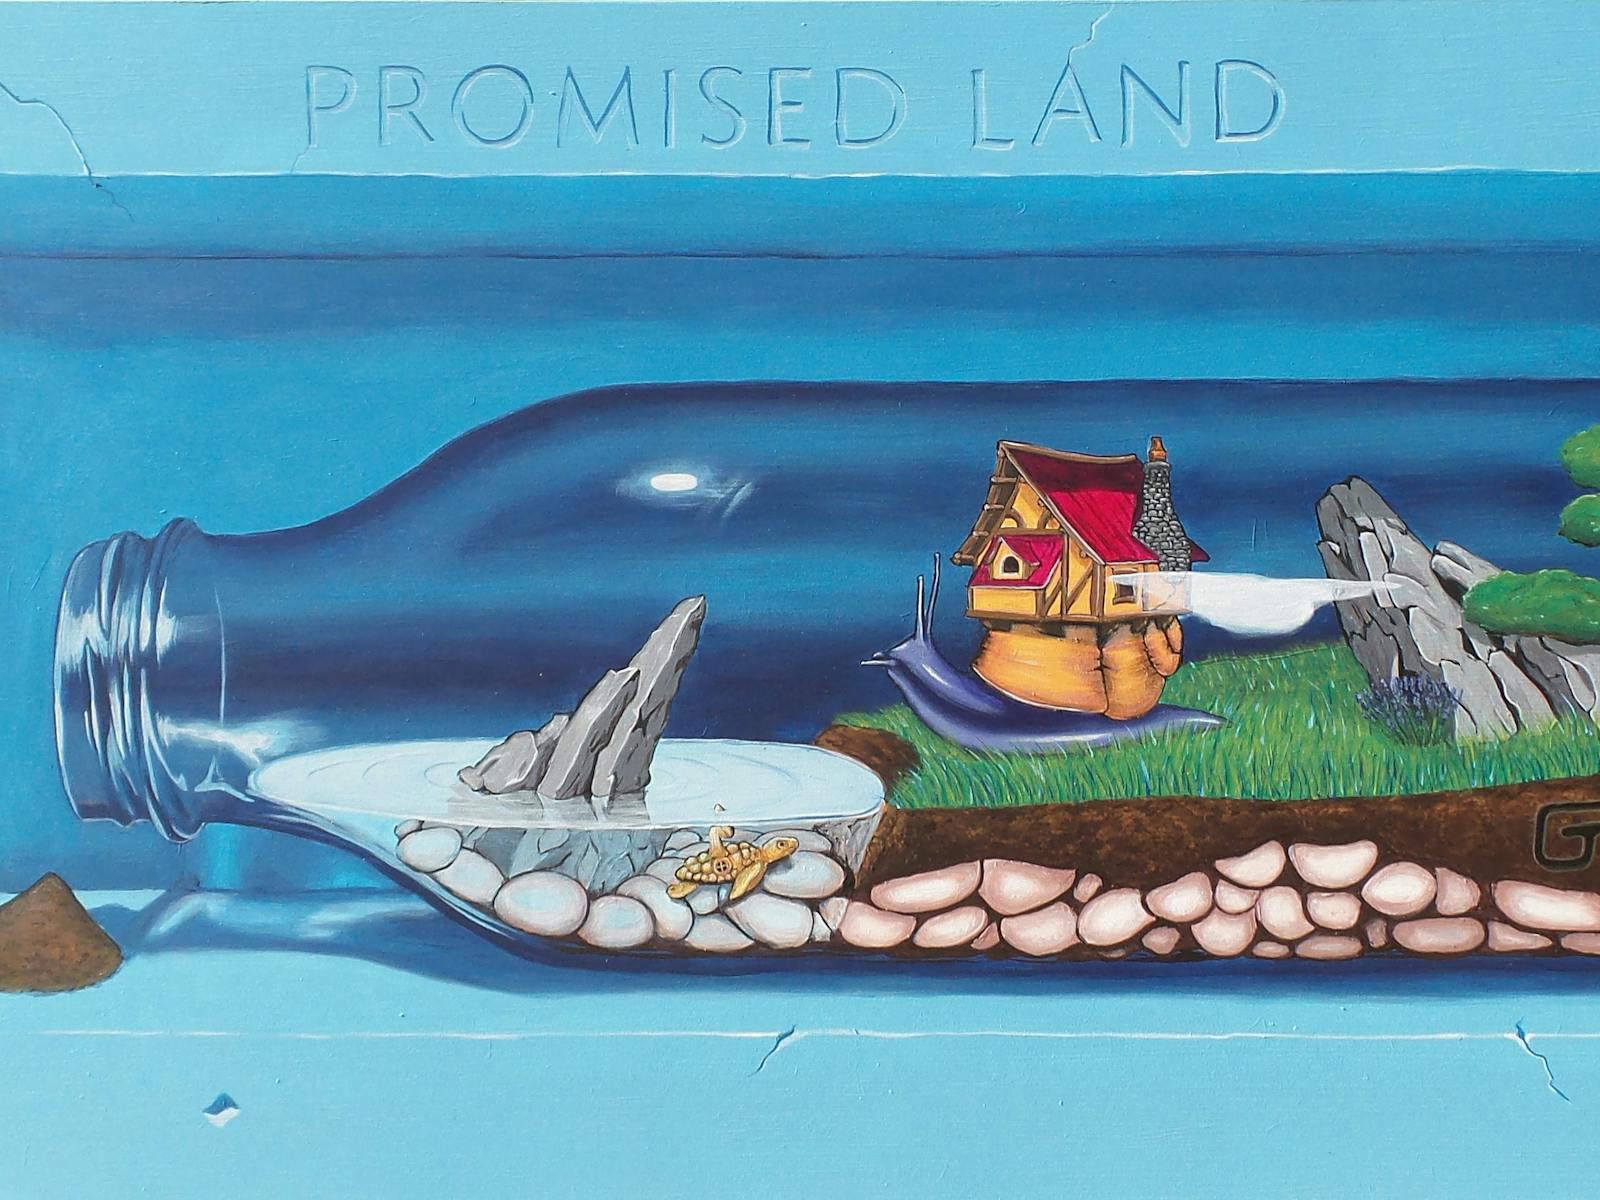 'Promised Land' - Winner of 2022 Highly Commended Award